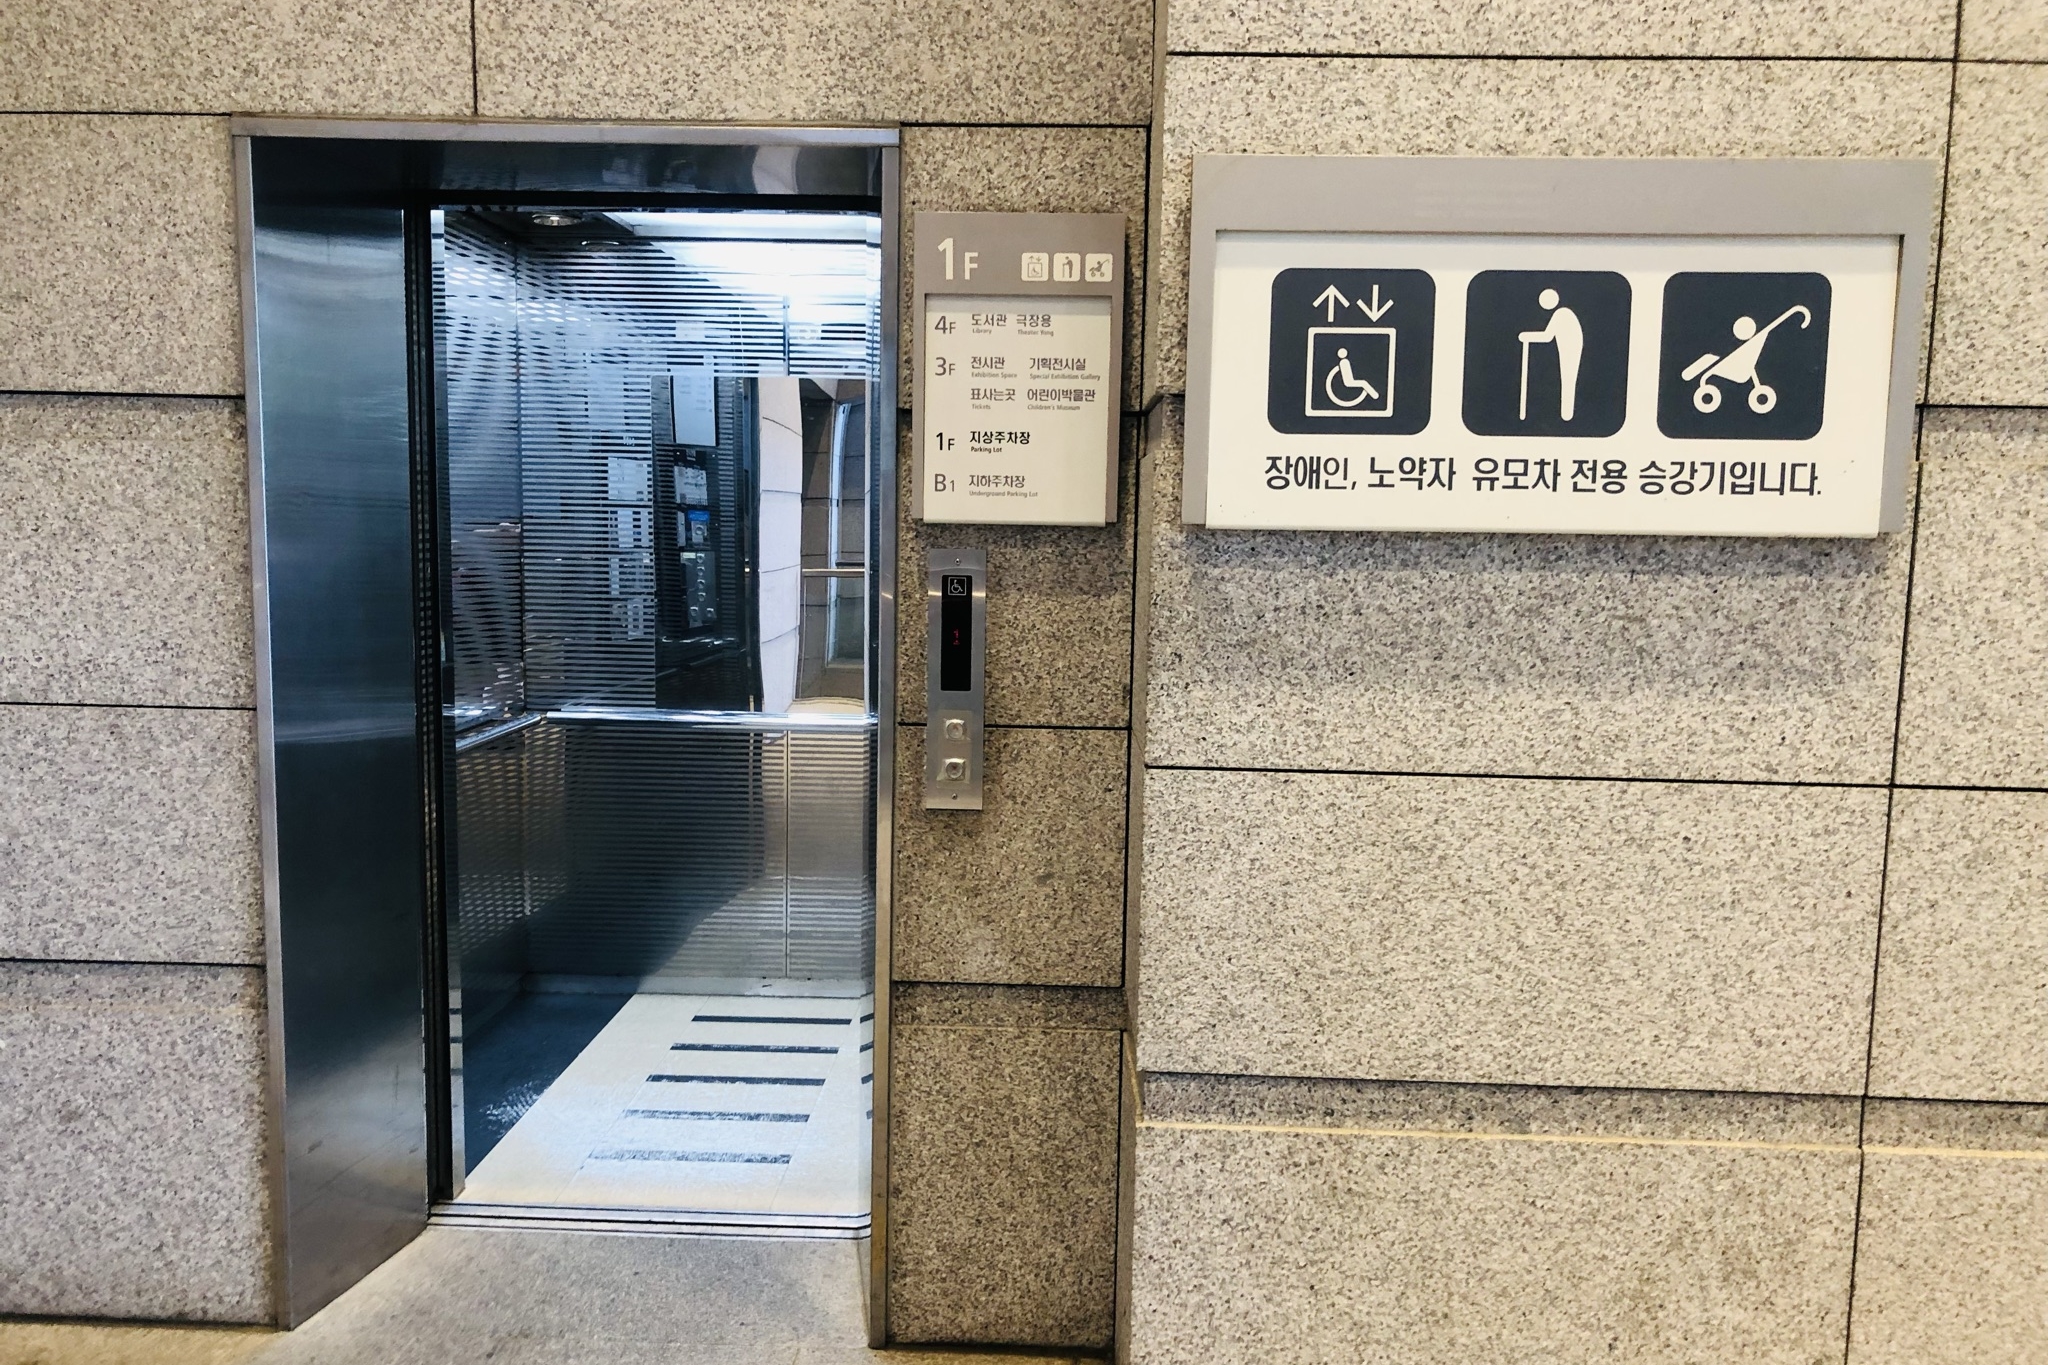 엘리베이터0 : 관광약자 전용 표지가 부착된 엘리베이터